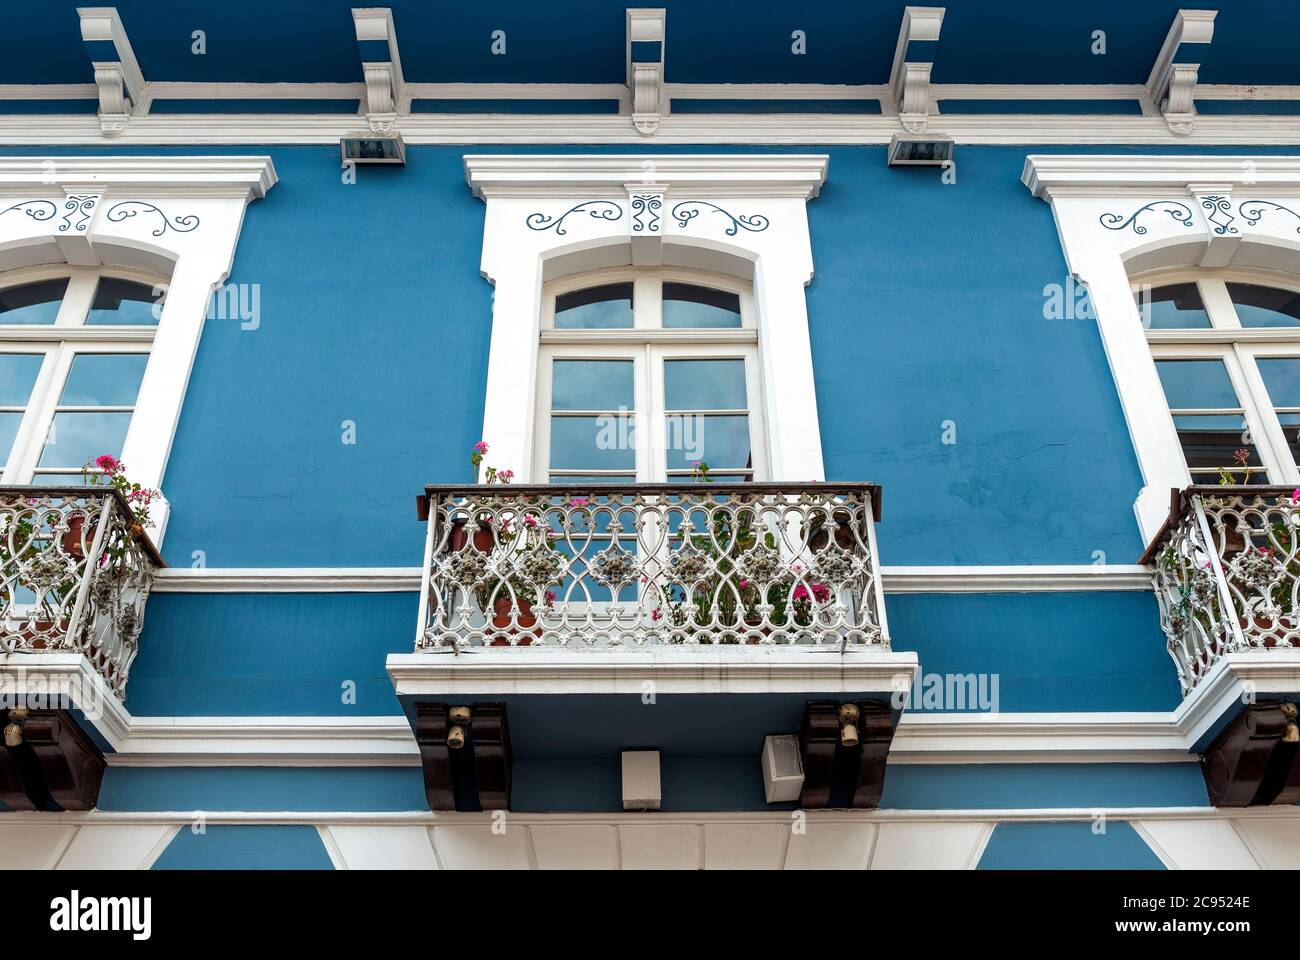 Architettura in stile coloniale con facciata blu e bianca e balcone, Quito, Ecuador. Foto Stock